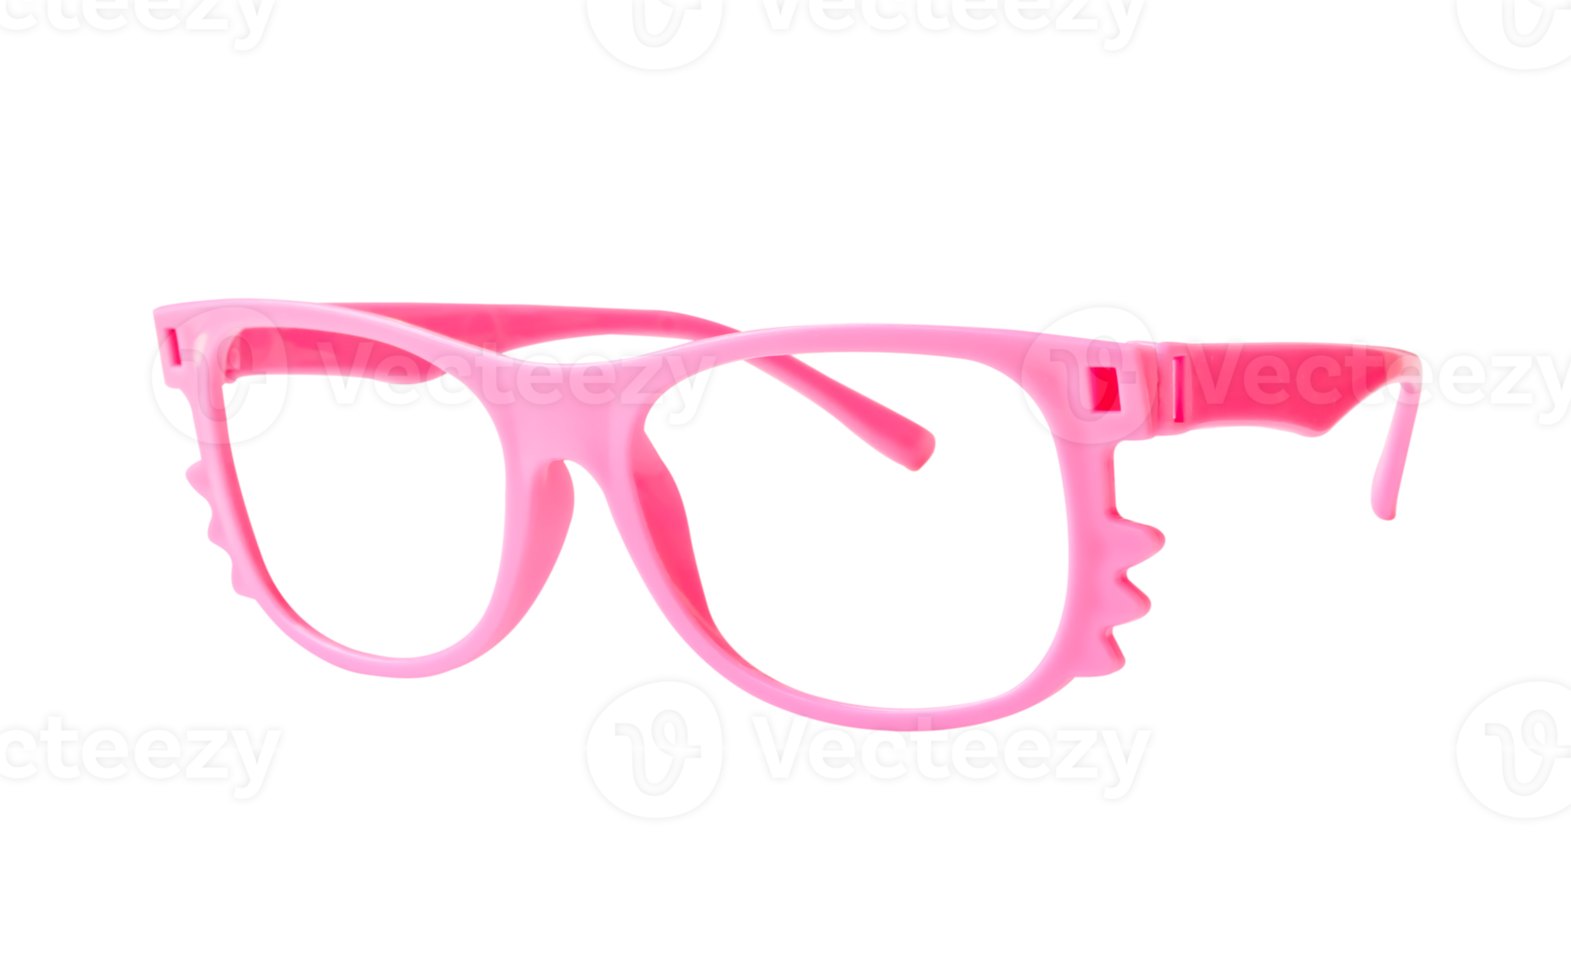 roze zonnebril kader of velgen van bril voor dame en kind geïsoleerd met knipsel pad in PNG het dossier formaat mode zon bril